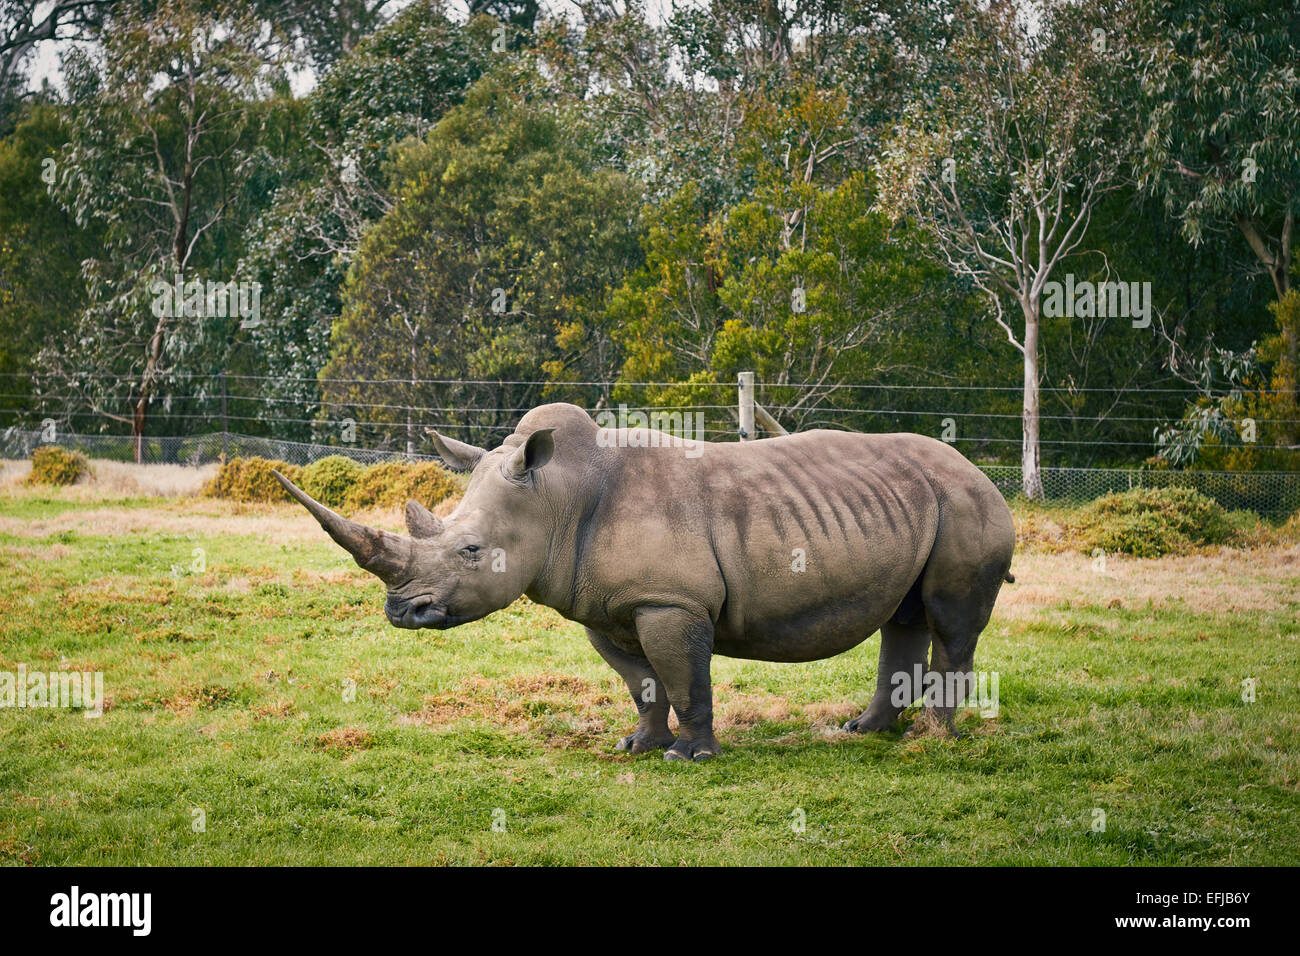 rhinoceros Stock Photo